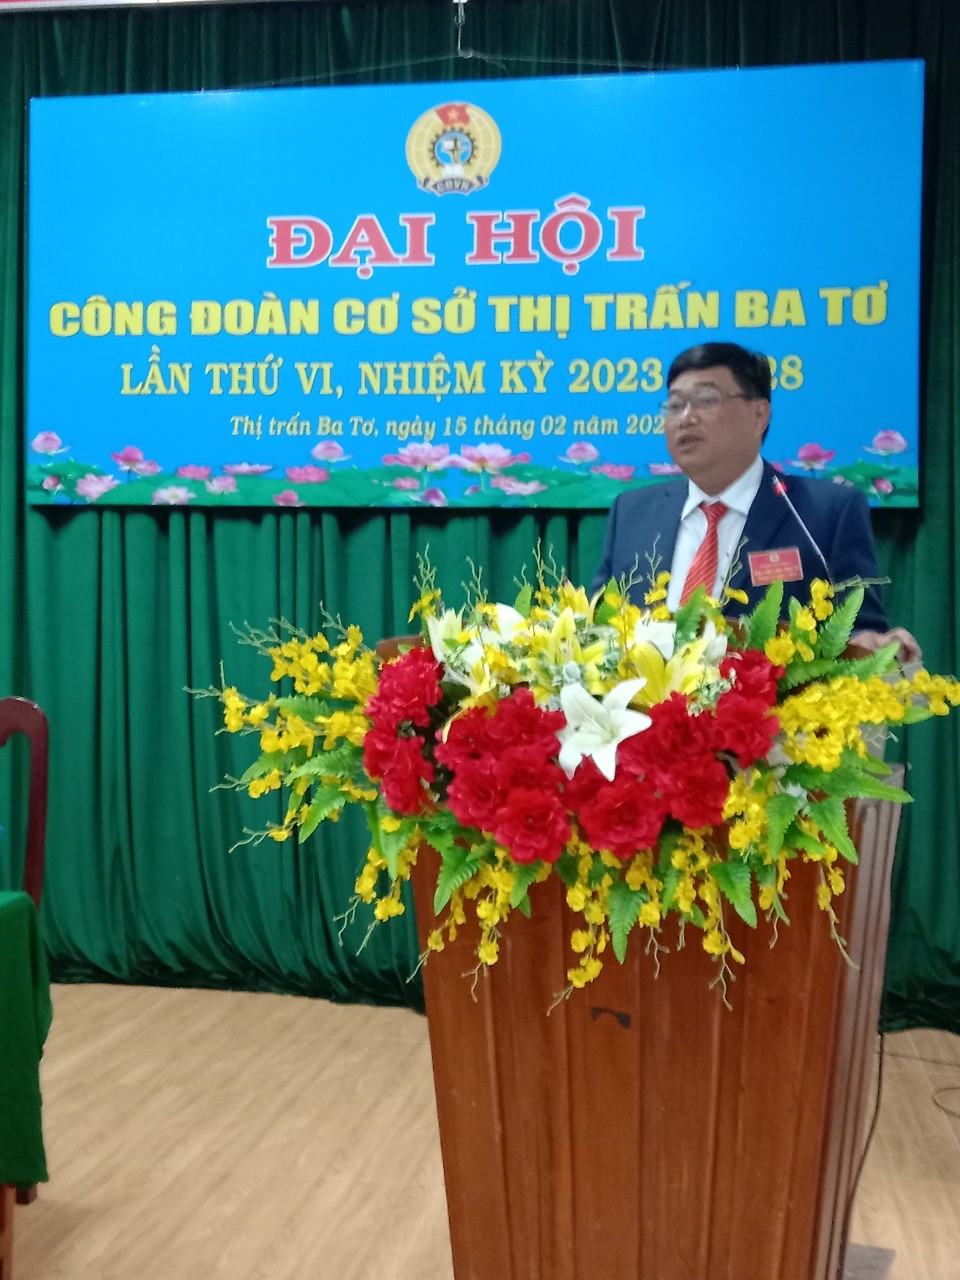 Đồng chí Nguyễn Hồng Quân, HUV, Bí thư Đảng ủy thị trấn phát biểu chỉ đạo tại Đại hội